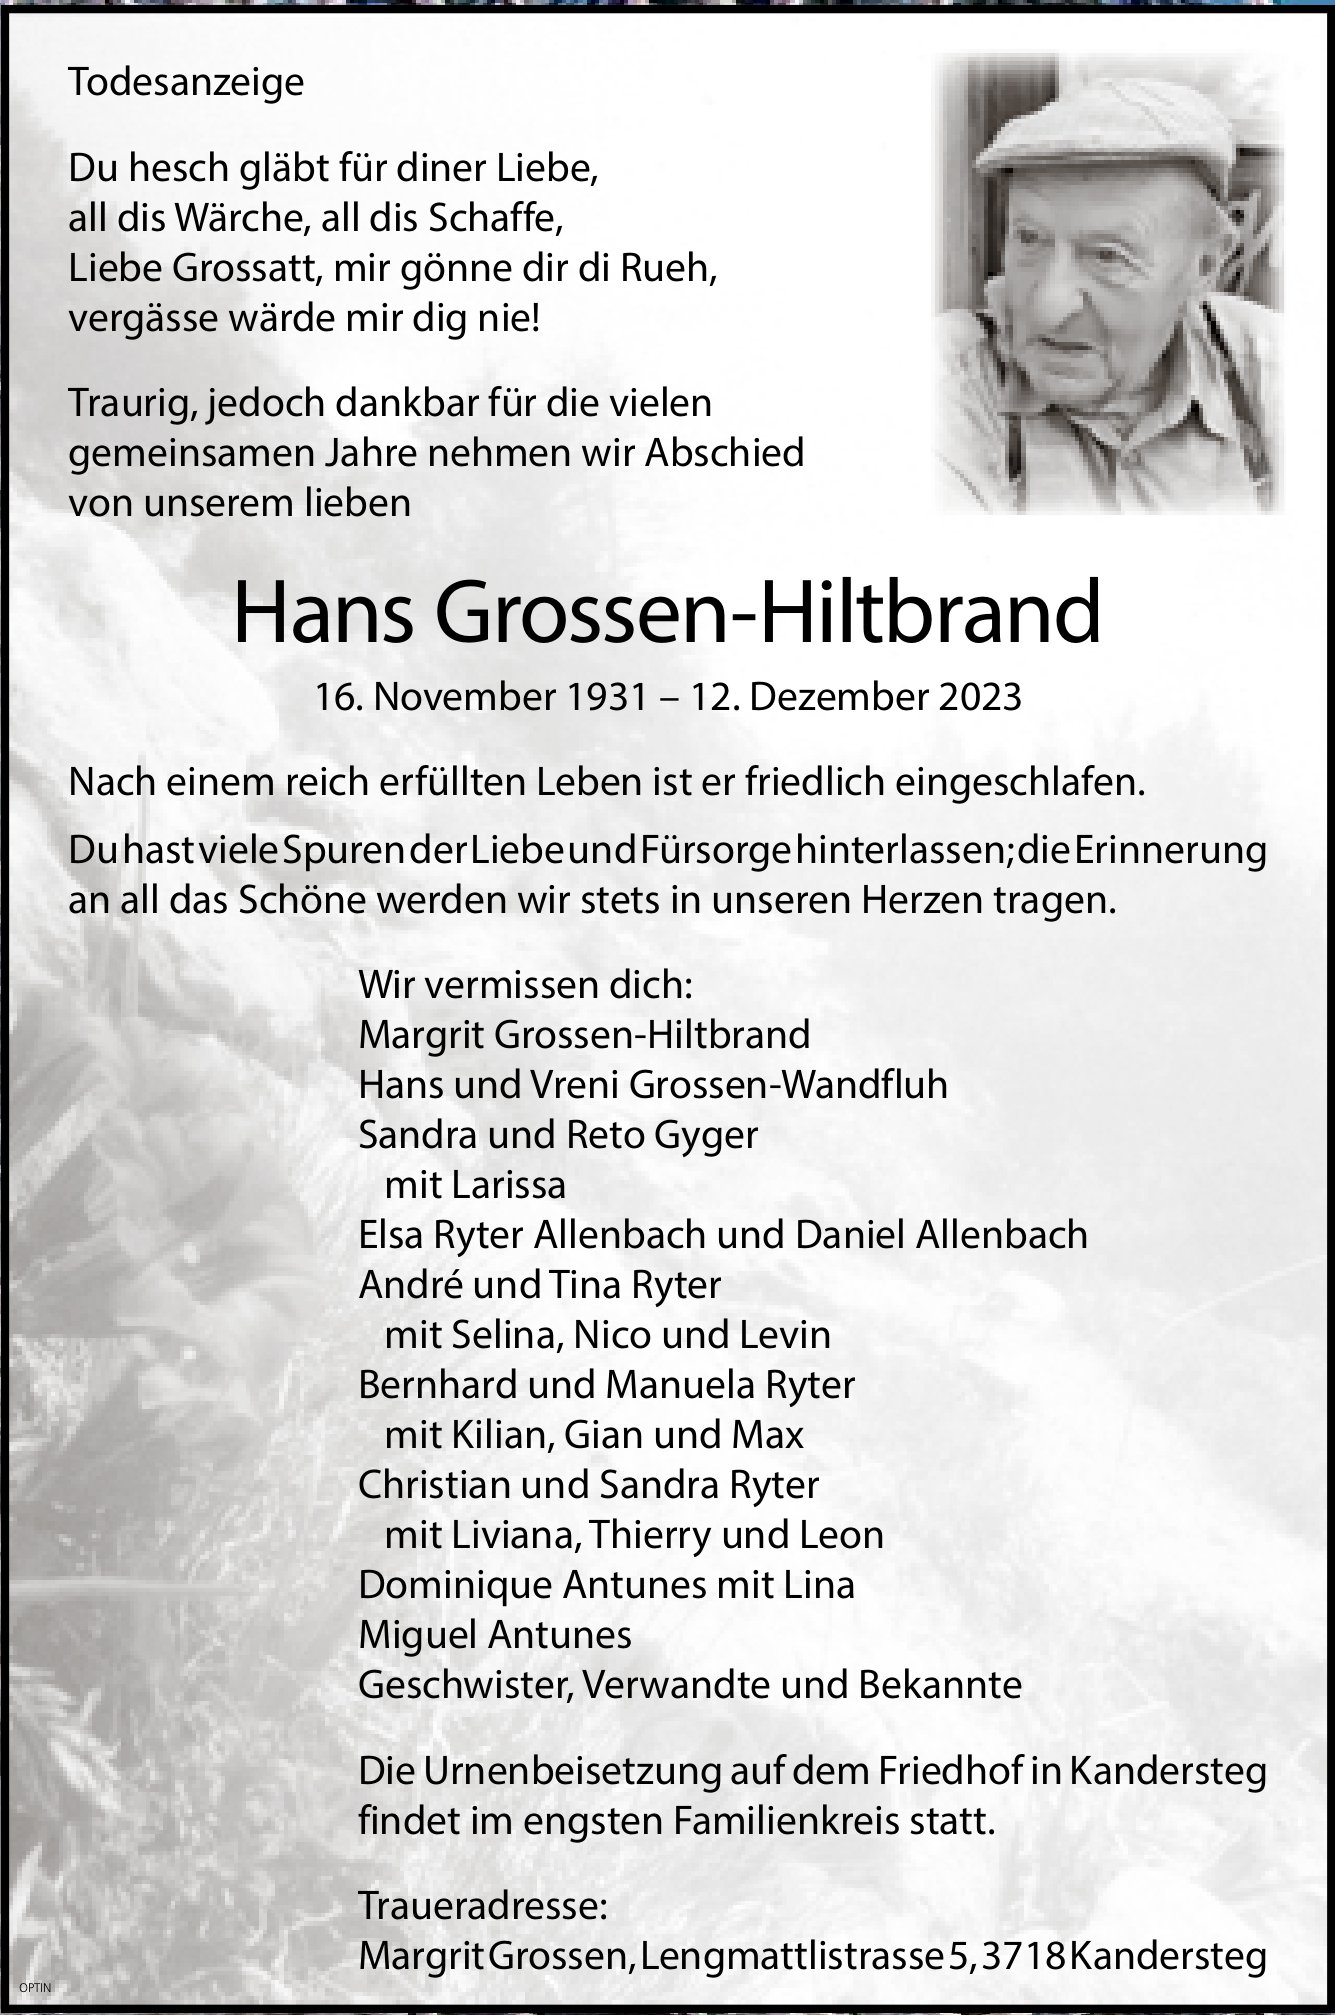 Hans Grossen-Hiltbrand, Dezember 2023 / TA